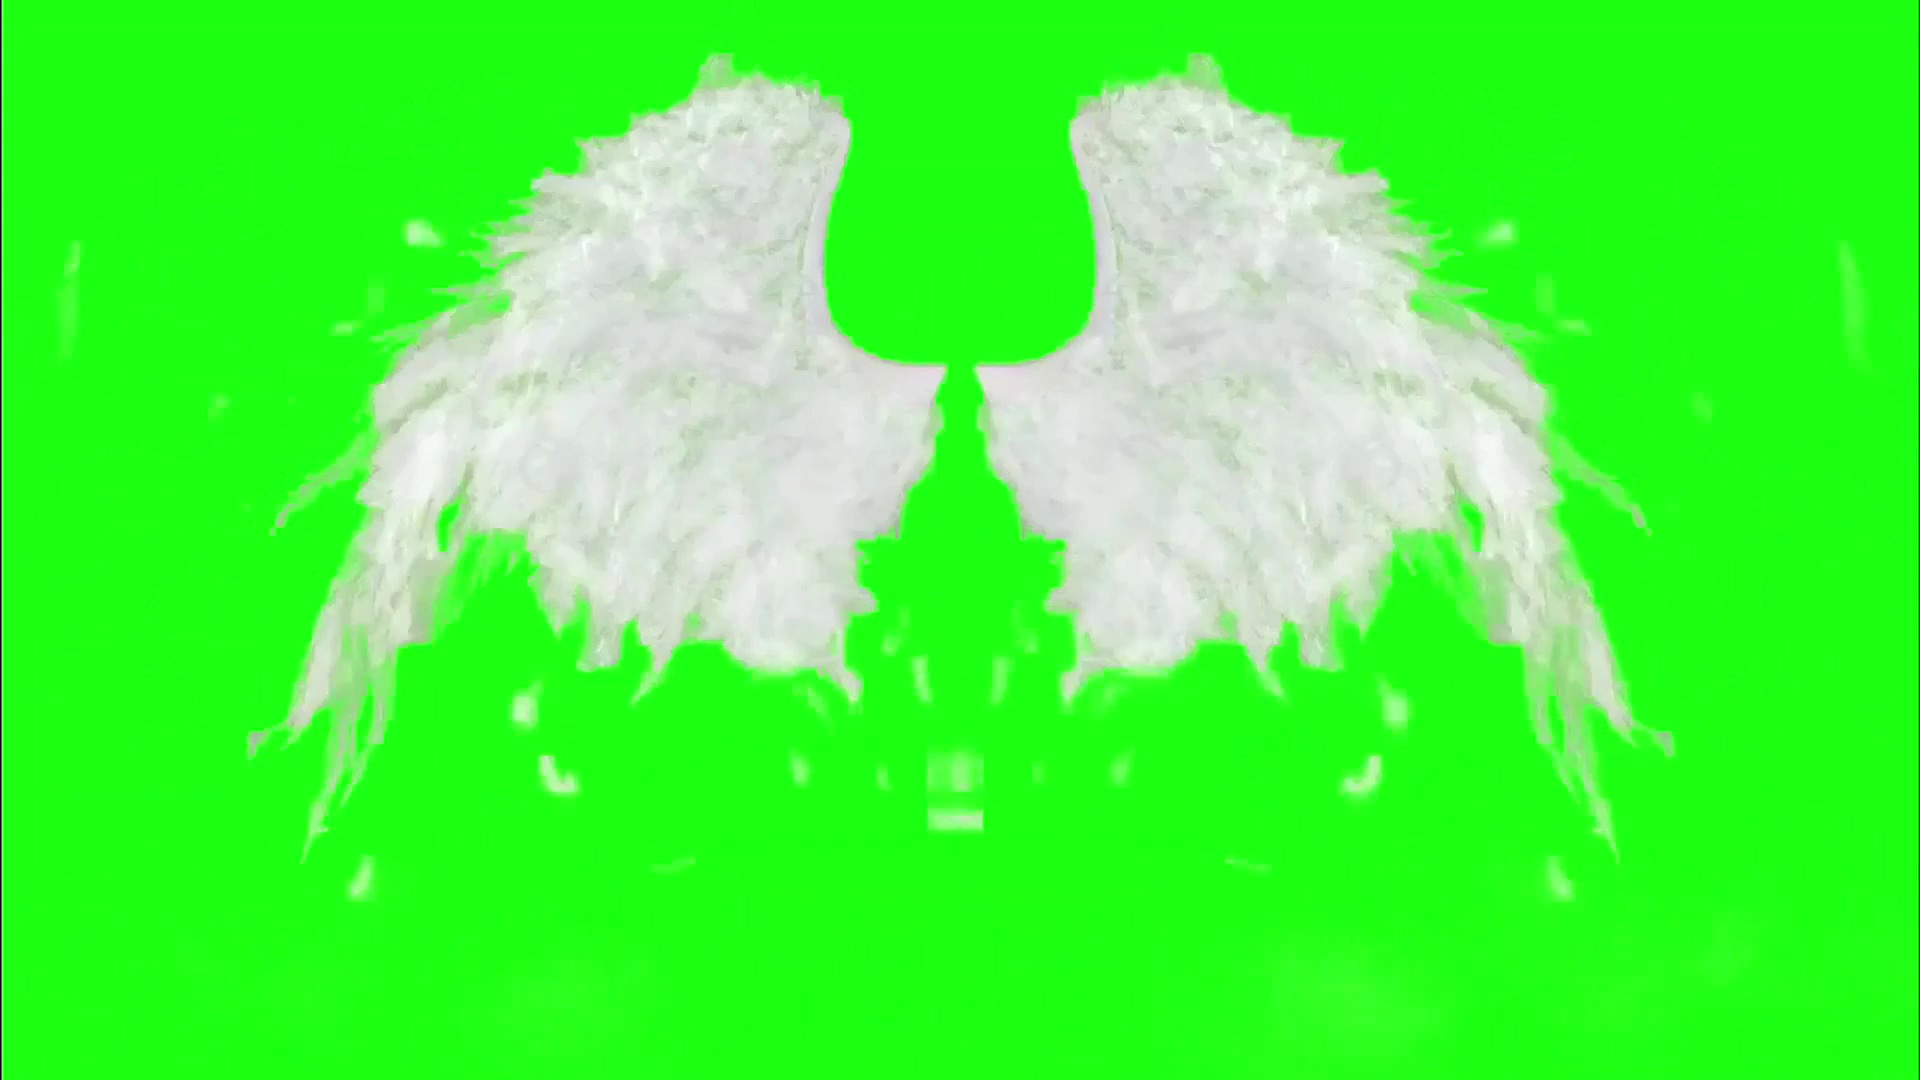 绿幕视频素材天使翅膀